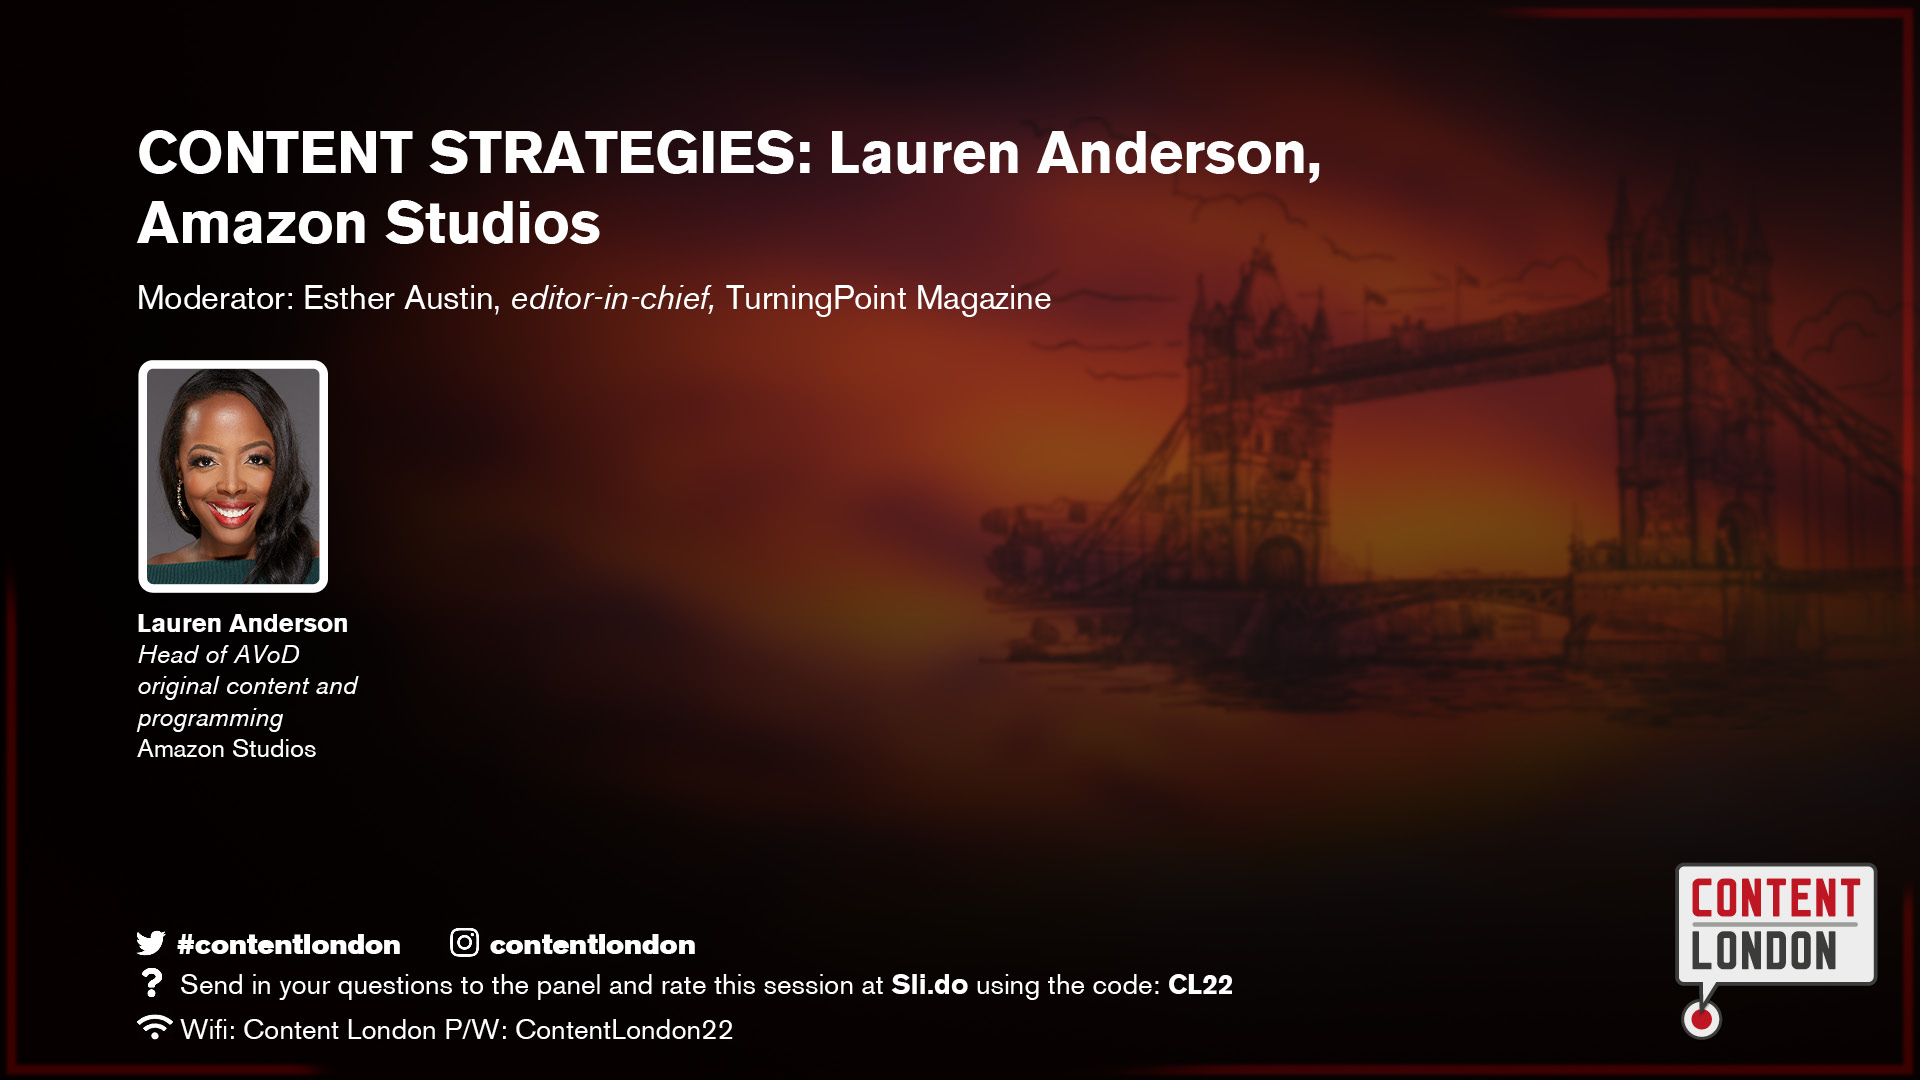 CONTENT STRATEGIES: Lauren Anderson, Amazon Studios